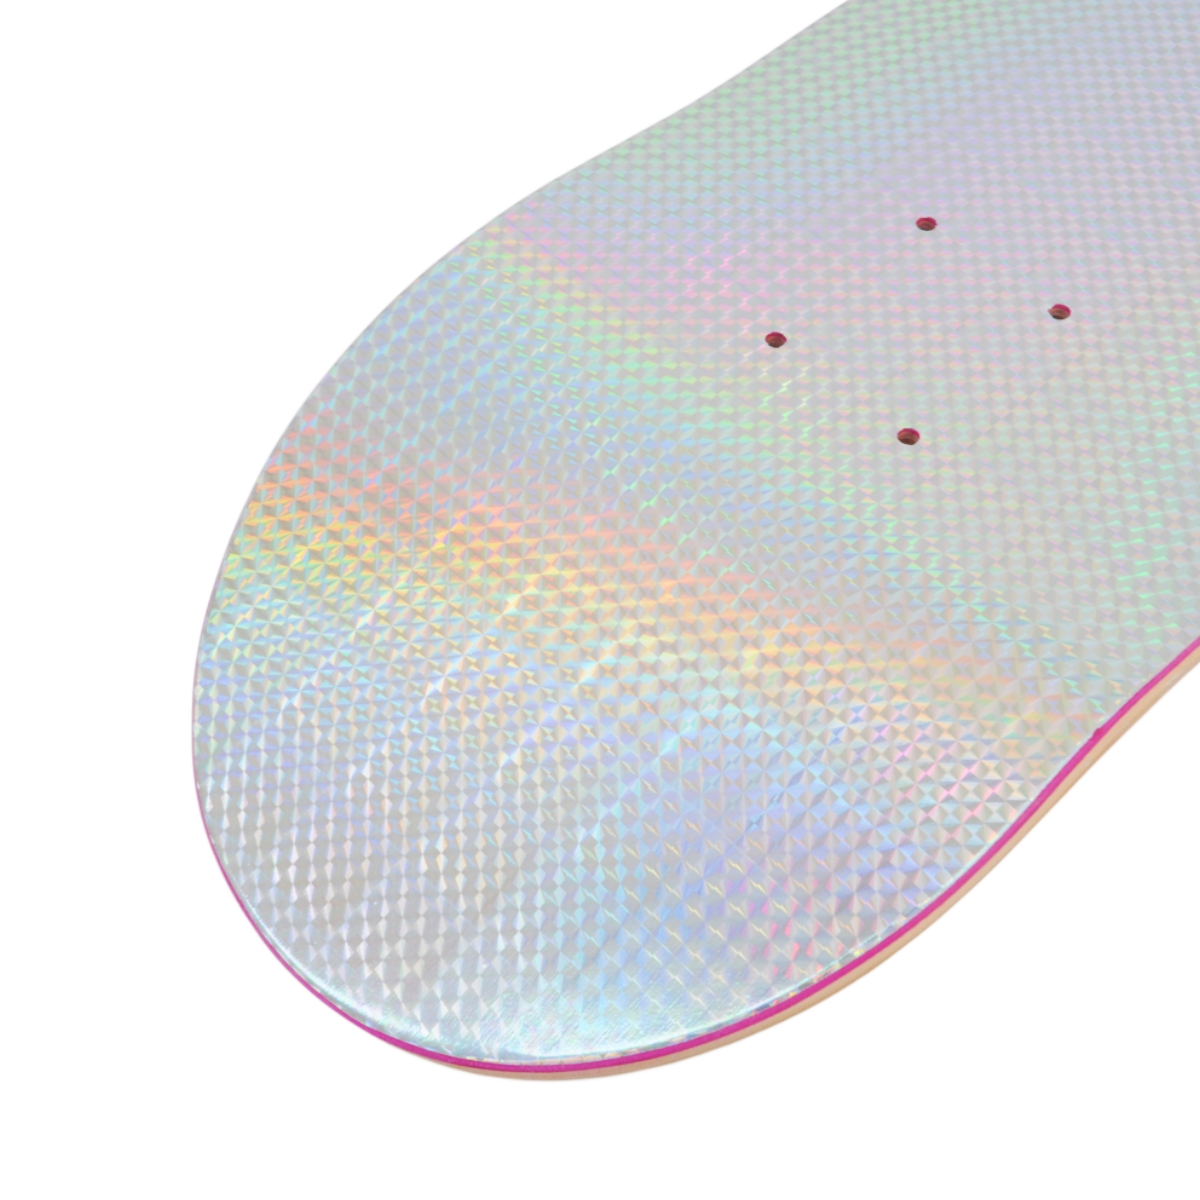 Skateboard Heat Transfer Paper Bulk Buy Holographic + Custom Design Above Woodsen 9